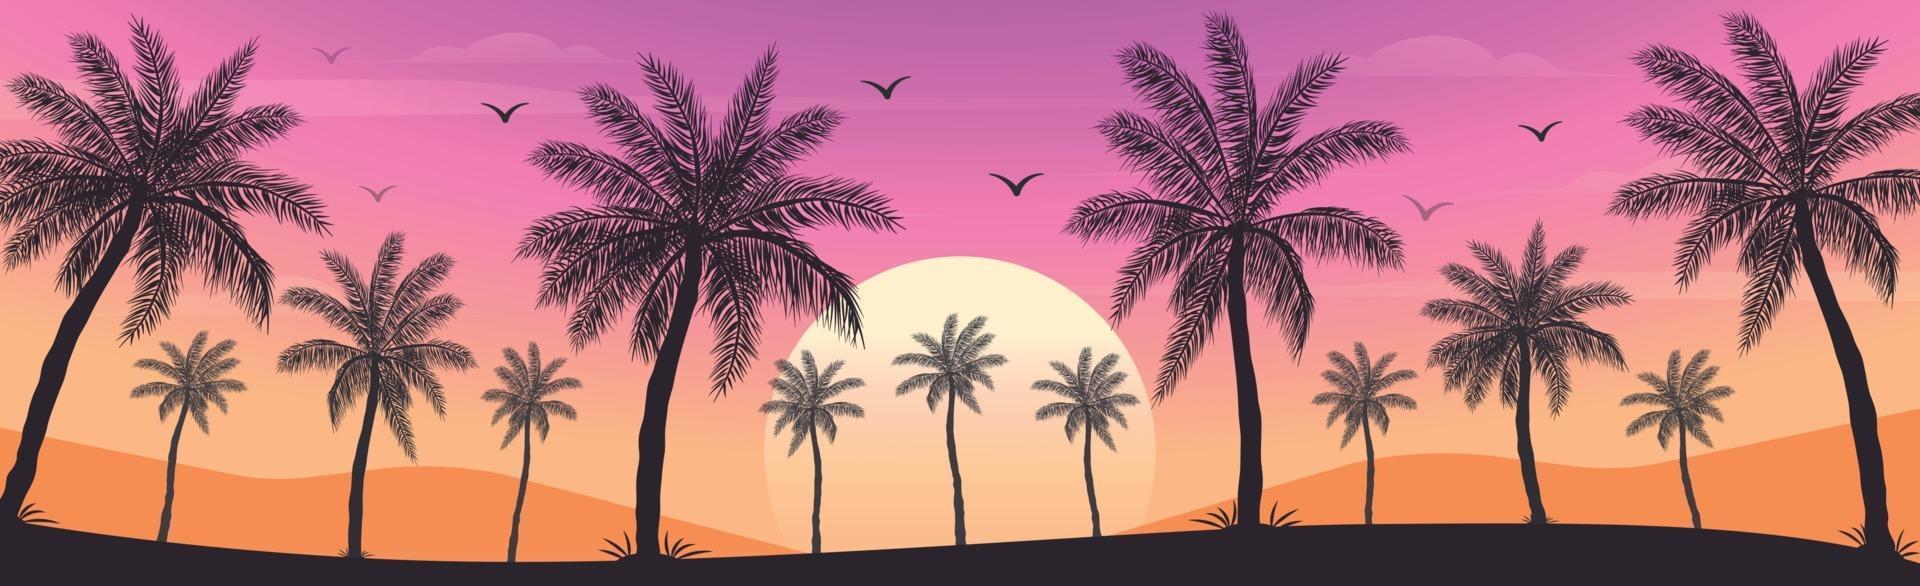 tramonto sulla spiaggia con palme vettore